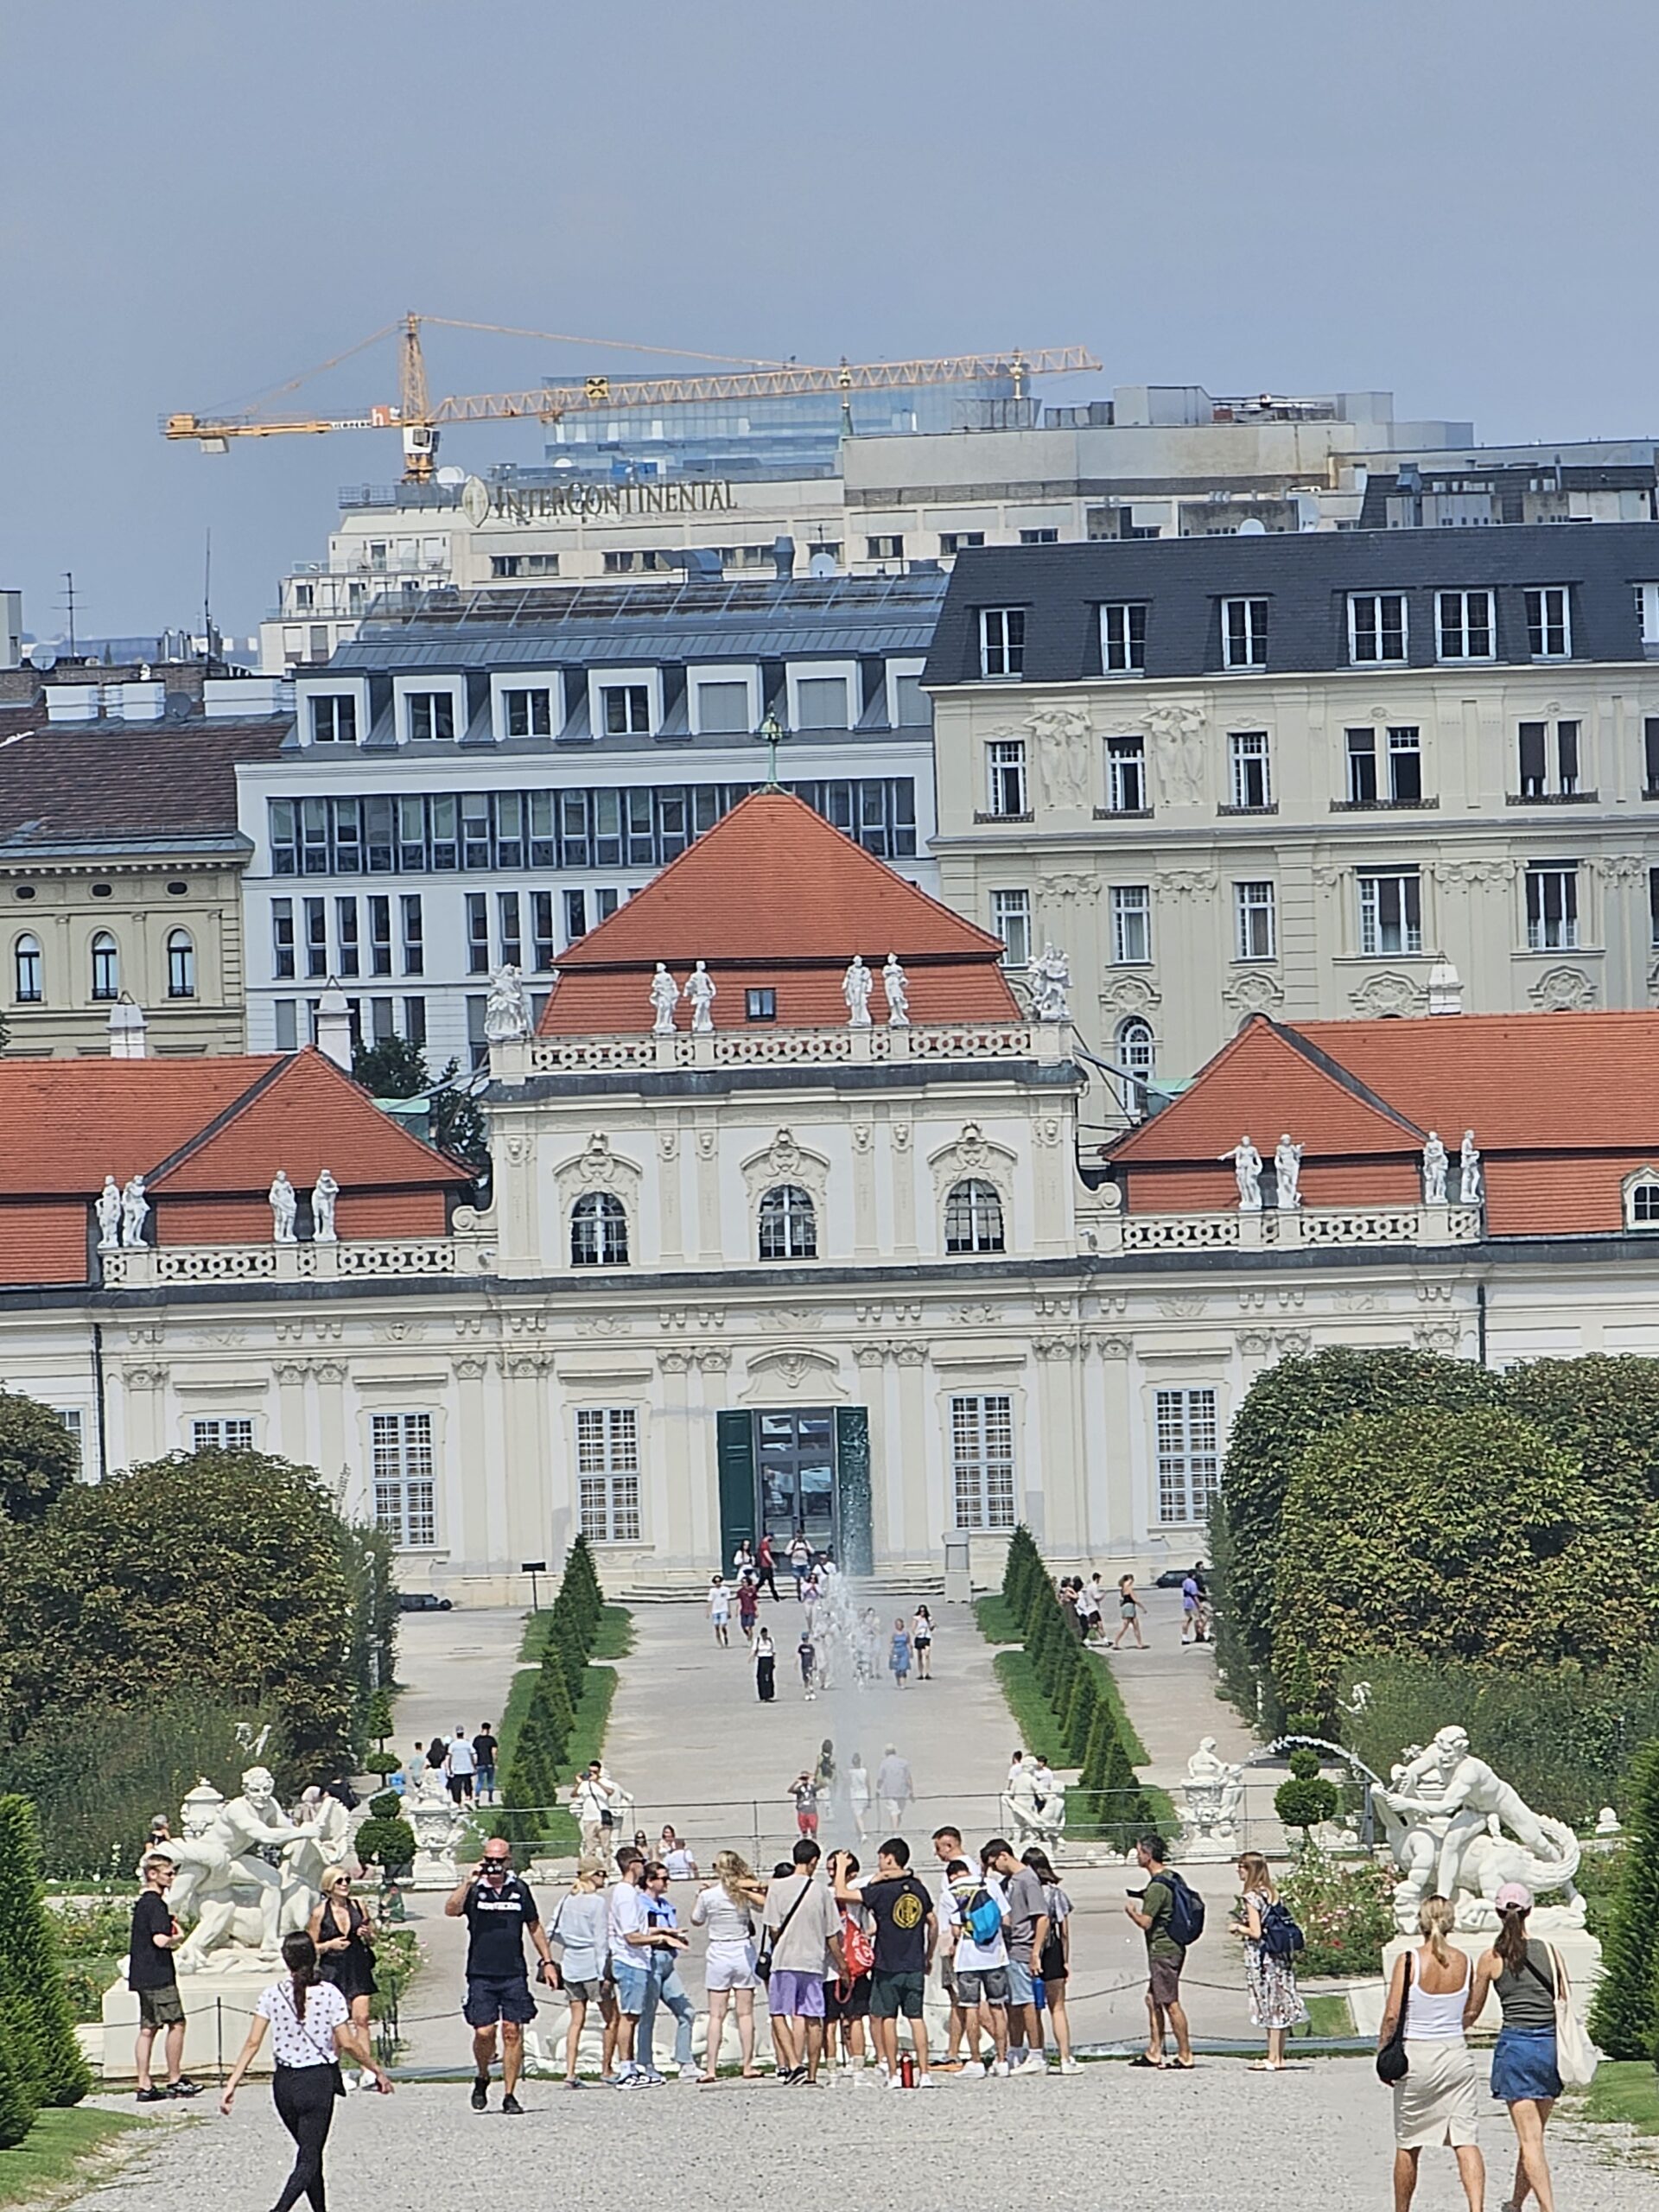 Lower Belvedere, Vienna. Image: 360onhistory.com